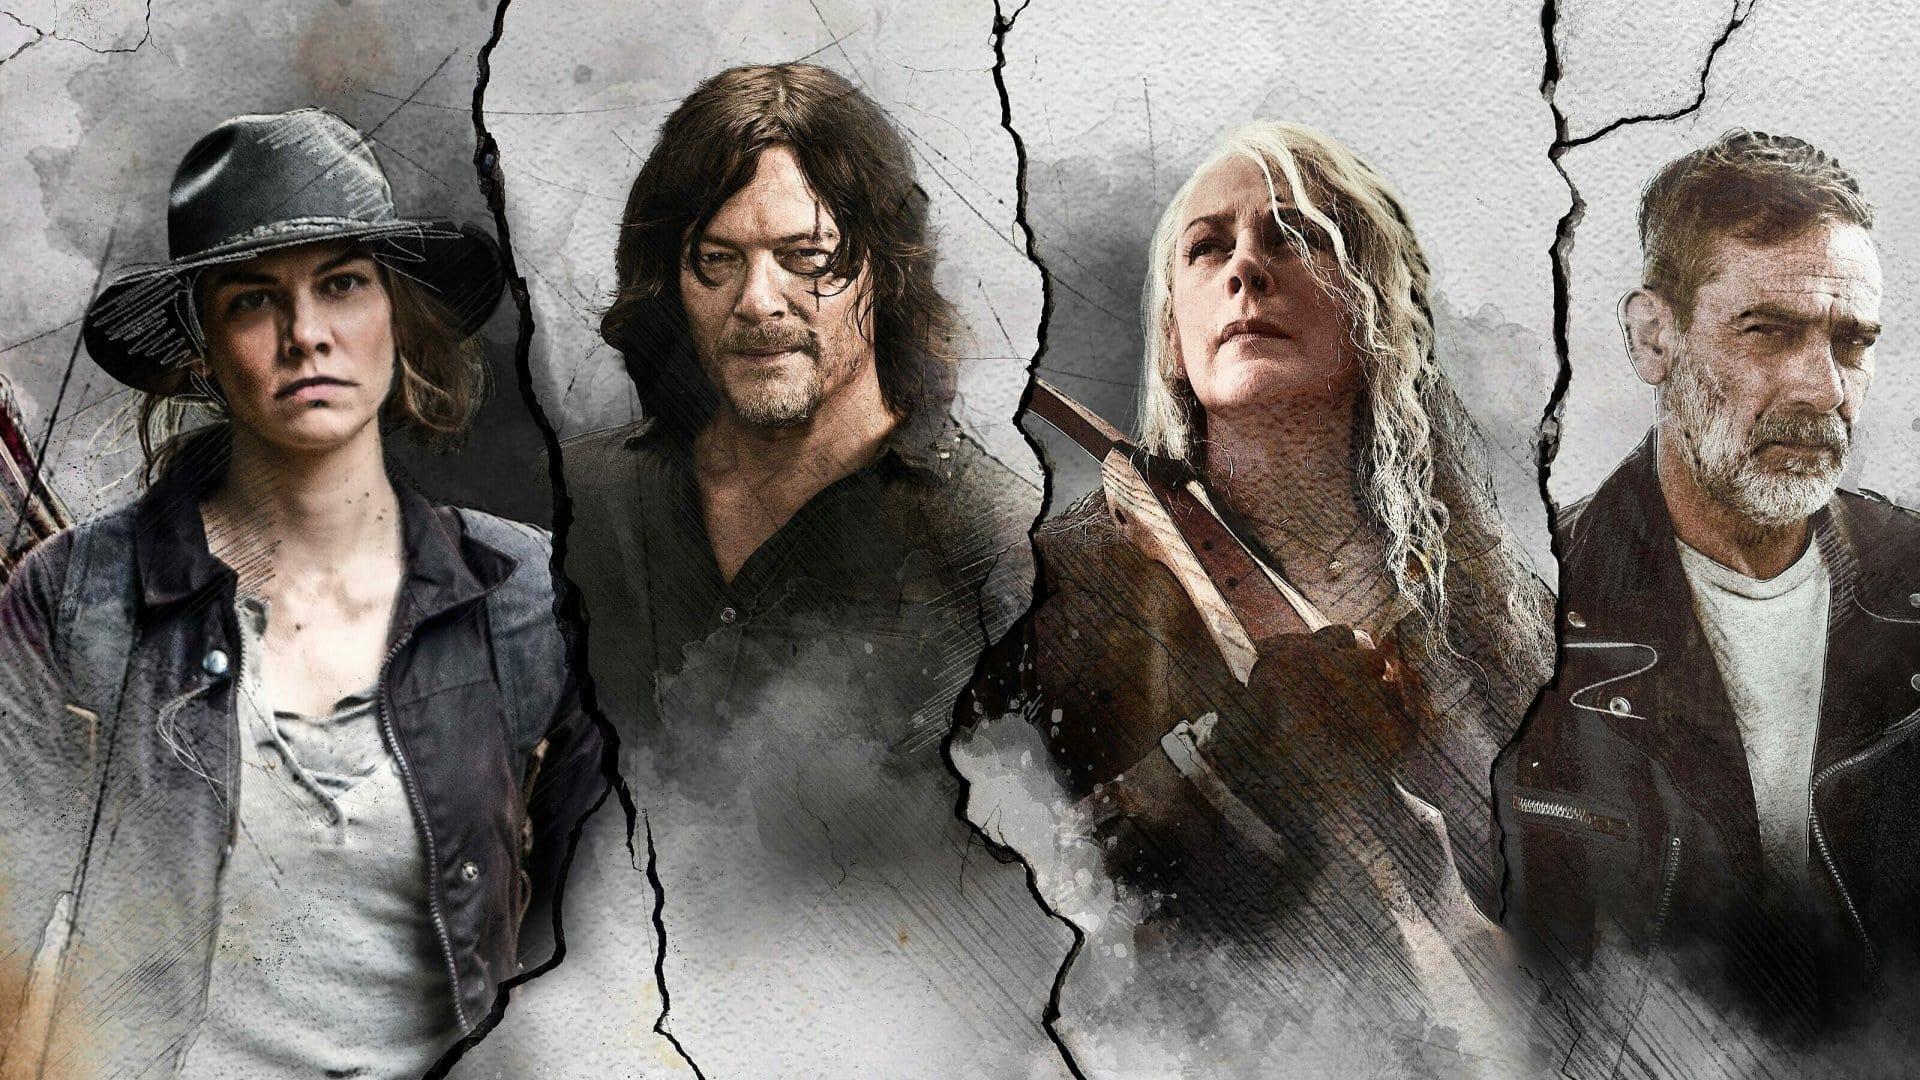 The Walking Dead: Origins backdrop